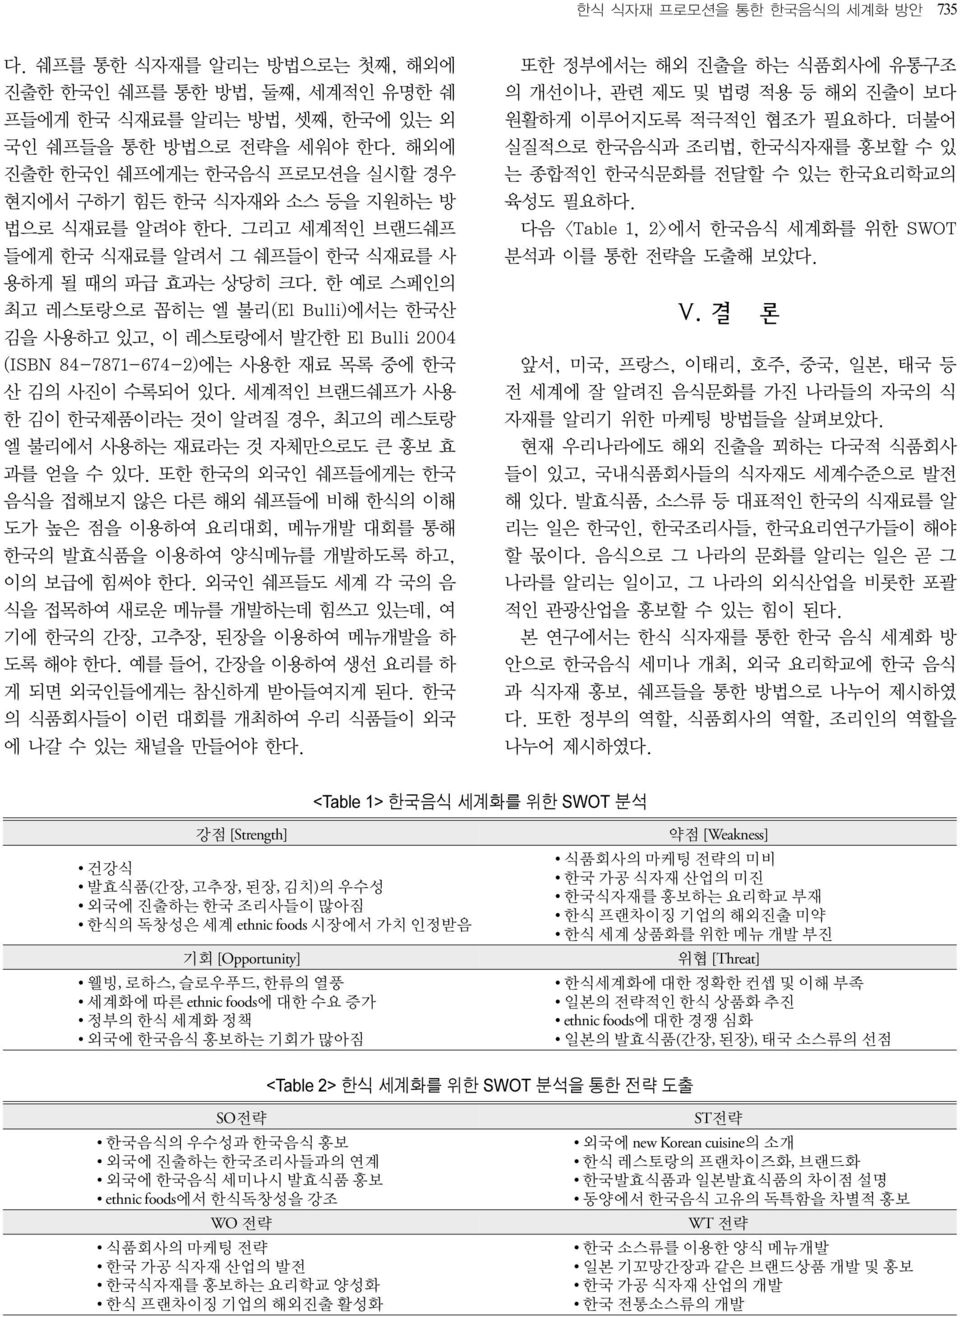 한 예로 스페인의 최고 레스토랑으로 꼽히는 엘 불리(El Bulli)에서는 한국산 김을 사용하고 있고, 이 레스토랑에서 발간한 El Bulli 2004 (ISBN 84-7871-674-2)에는 사용한 재료 목록 중에 한국 산 김의 사진이 수록되어 있다.